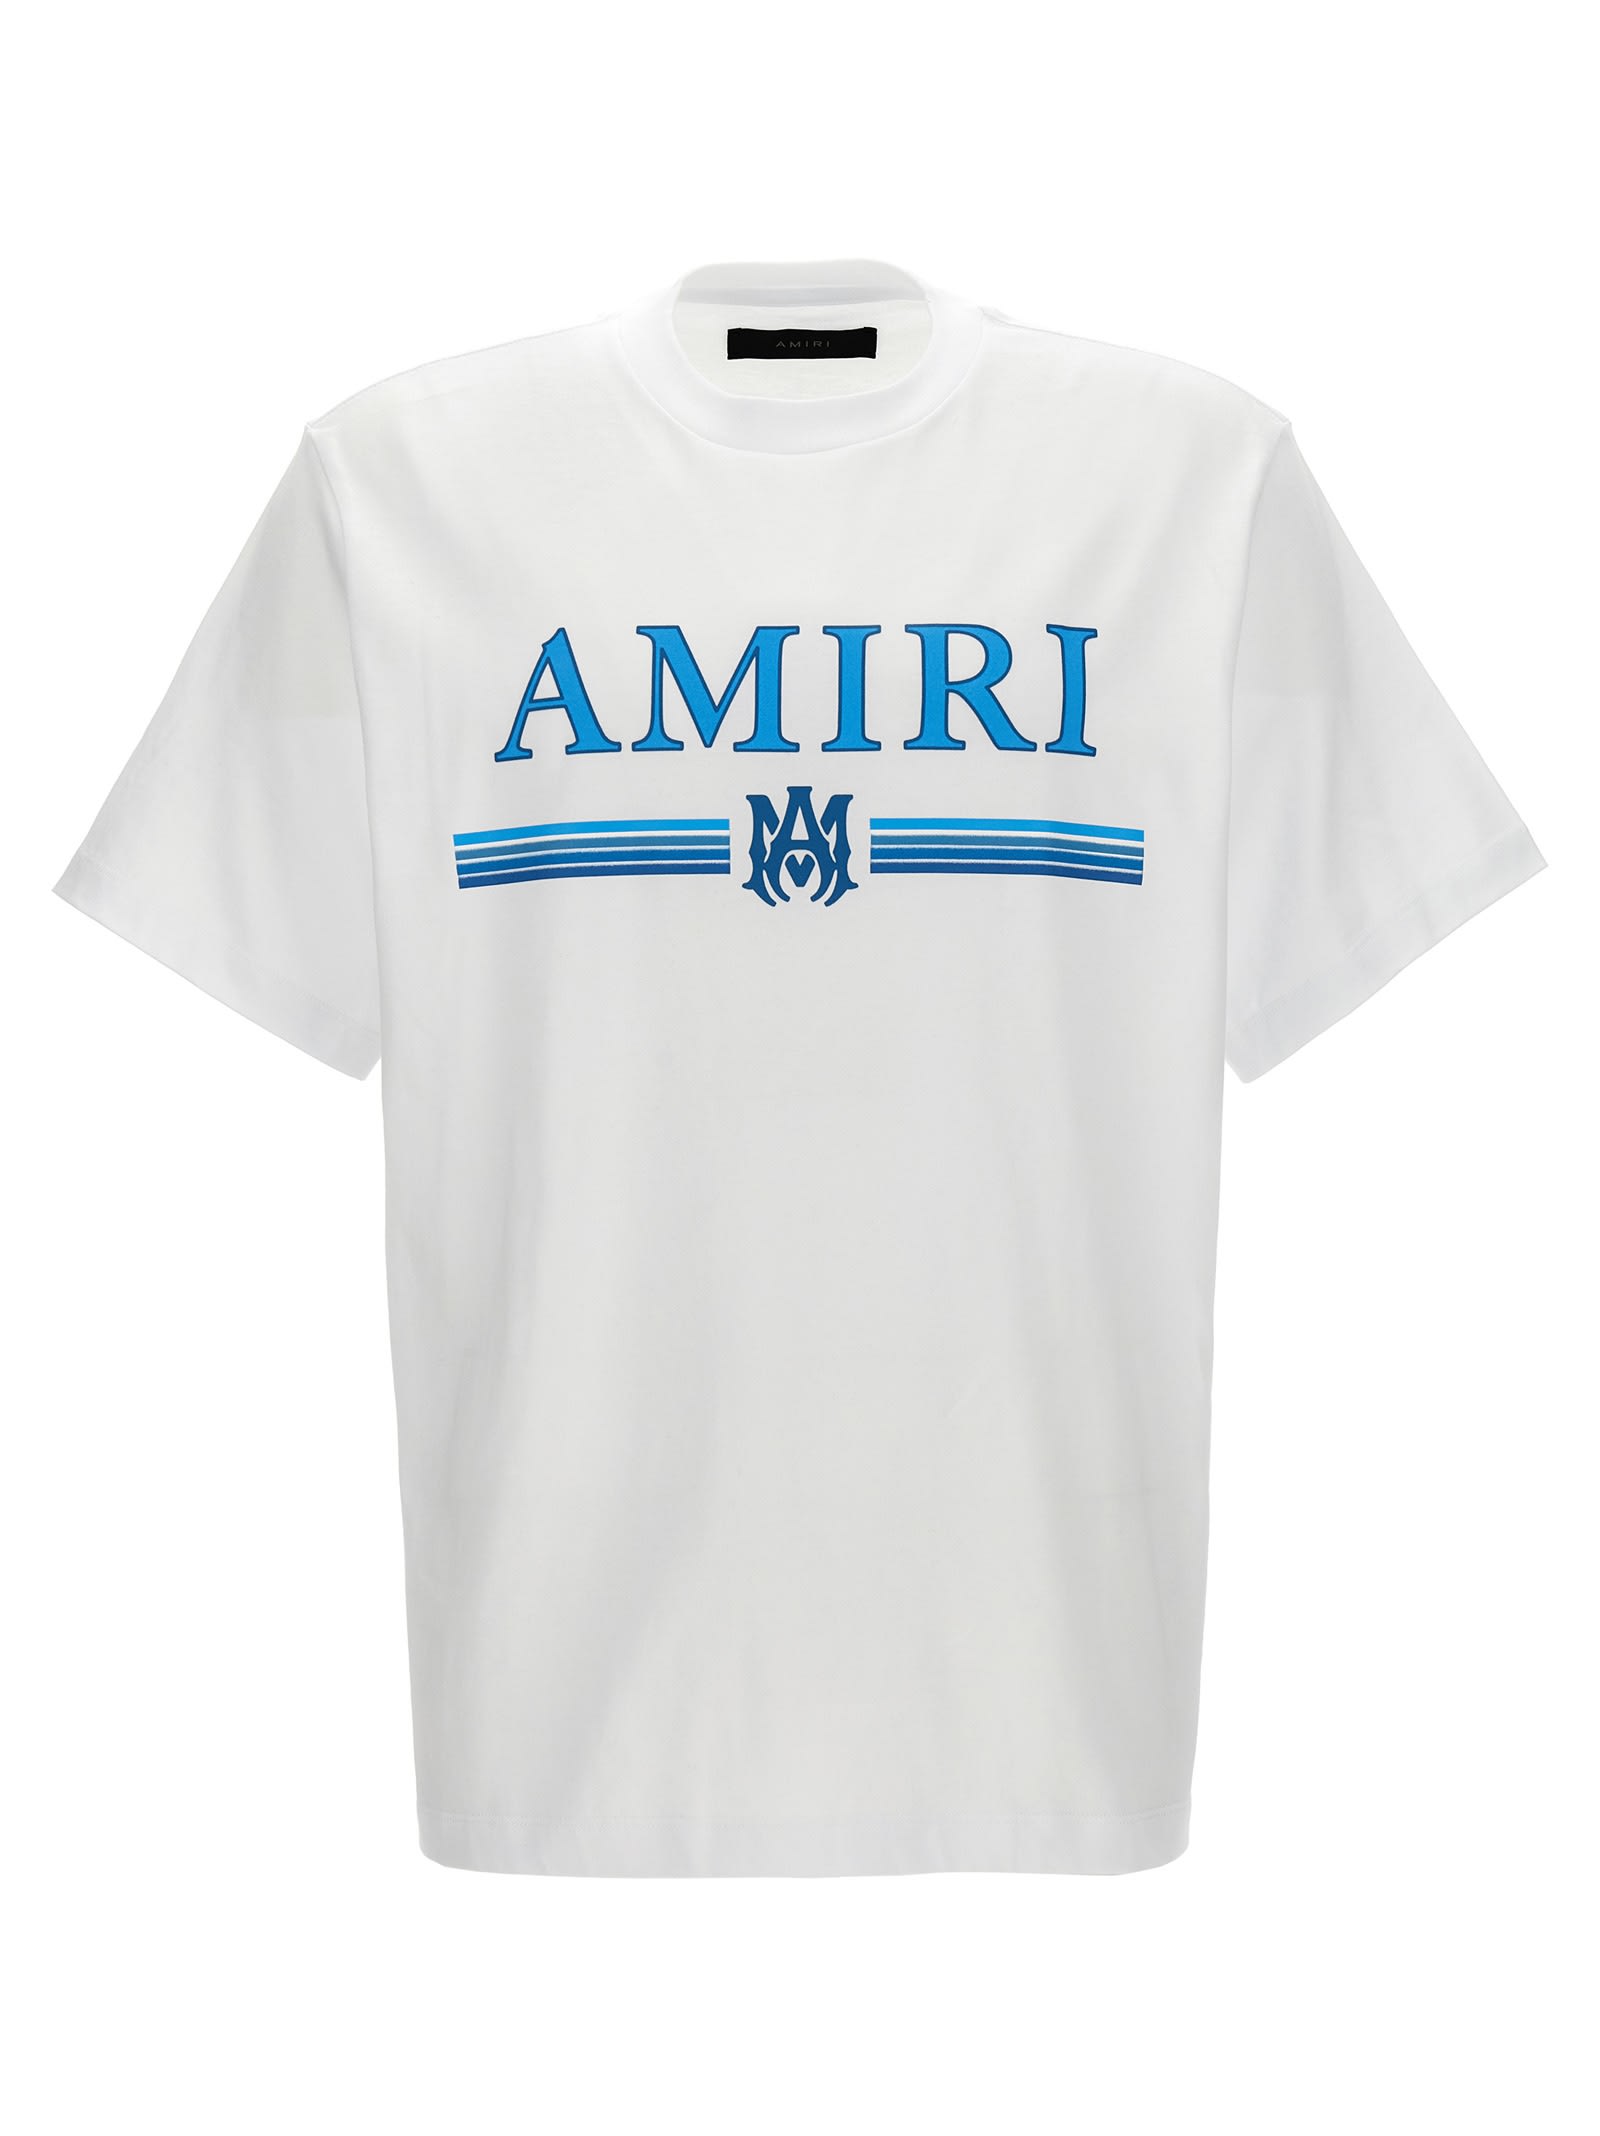 AMIRI MA BAR T-SHIRT